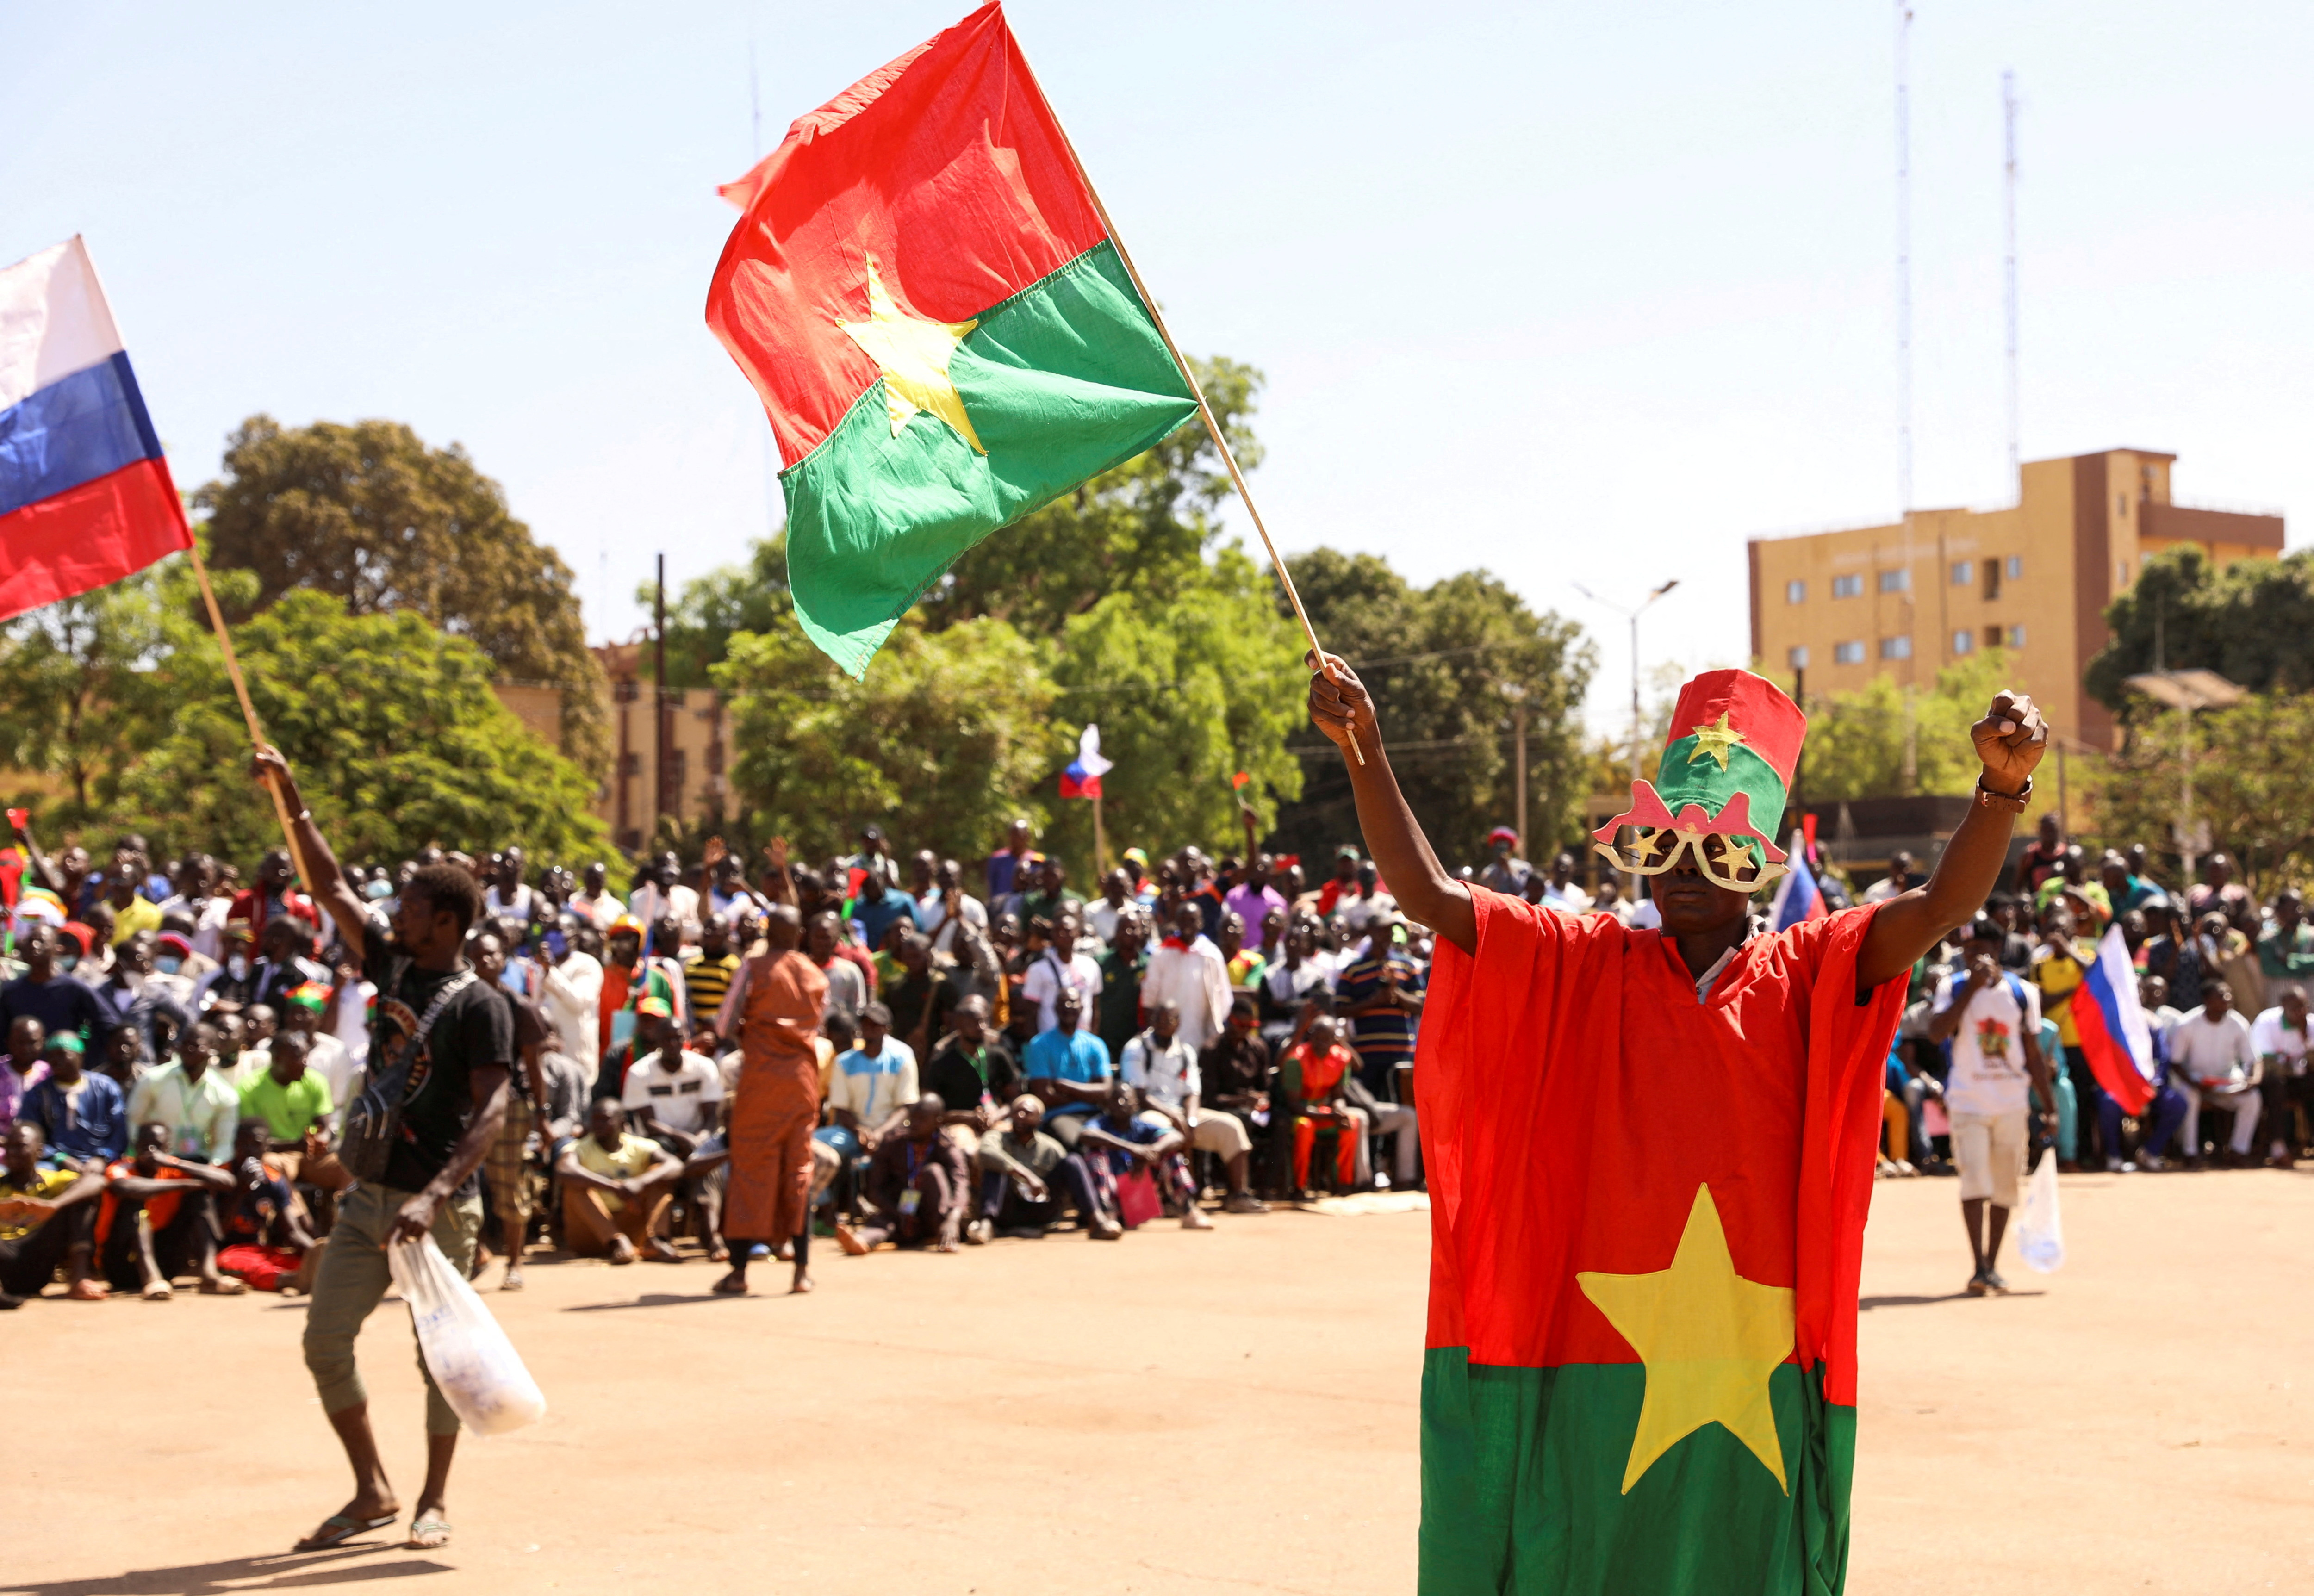 Η στρατιωτική χούντα της Μπουρκίνα Φάσο λέει ότι απέτρεψε μια απόπειρα πραξικοπήματος